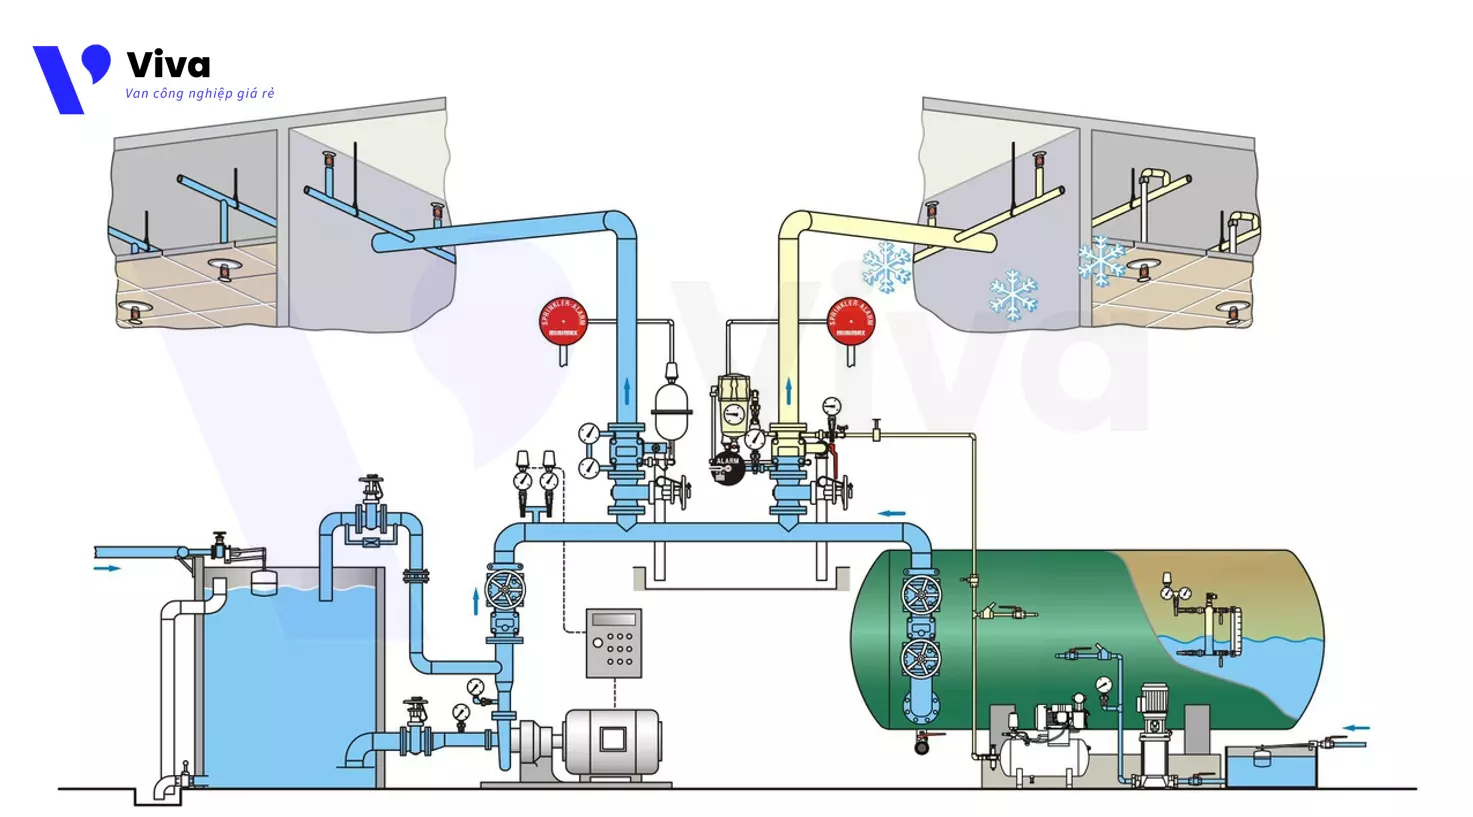 Hệ thống phun nước chữa cháy ướt và hệ thống phun nước chữa cháy khô